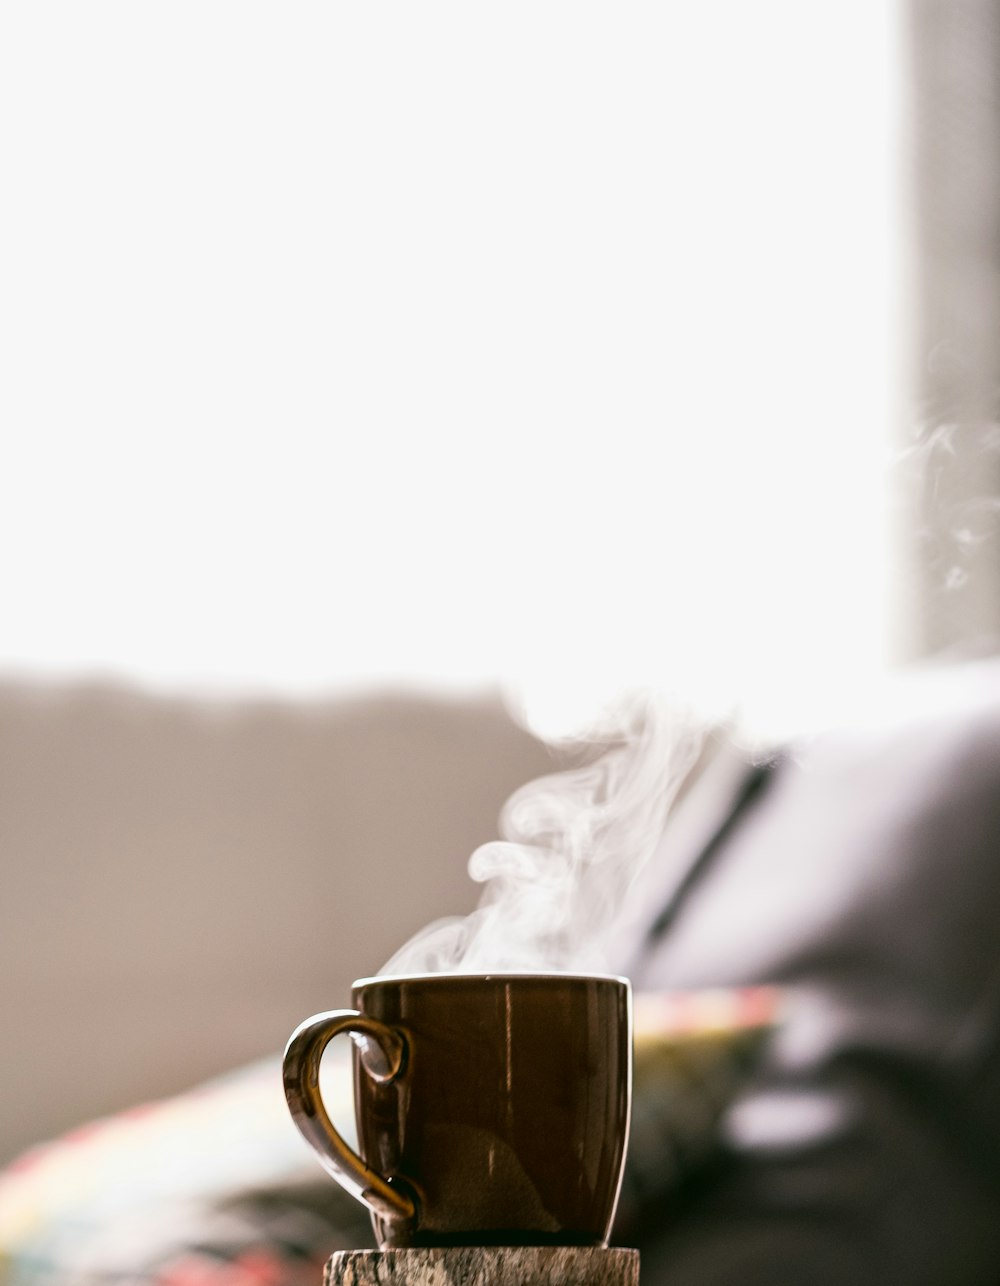 Flachfokusfotografie von heißem Kaffee im Becher mit Untertasse